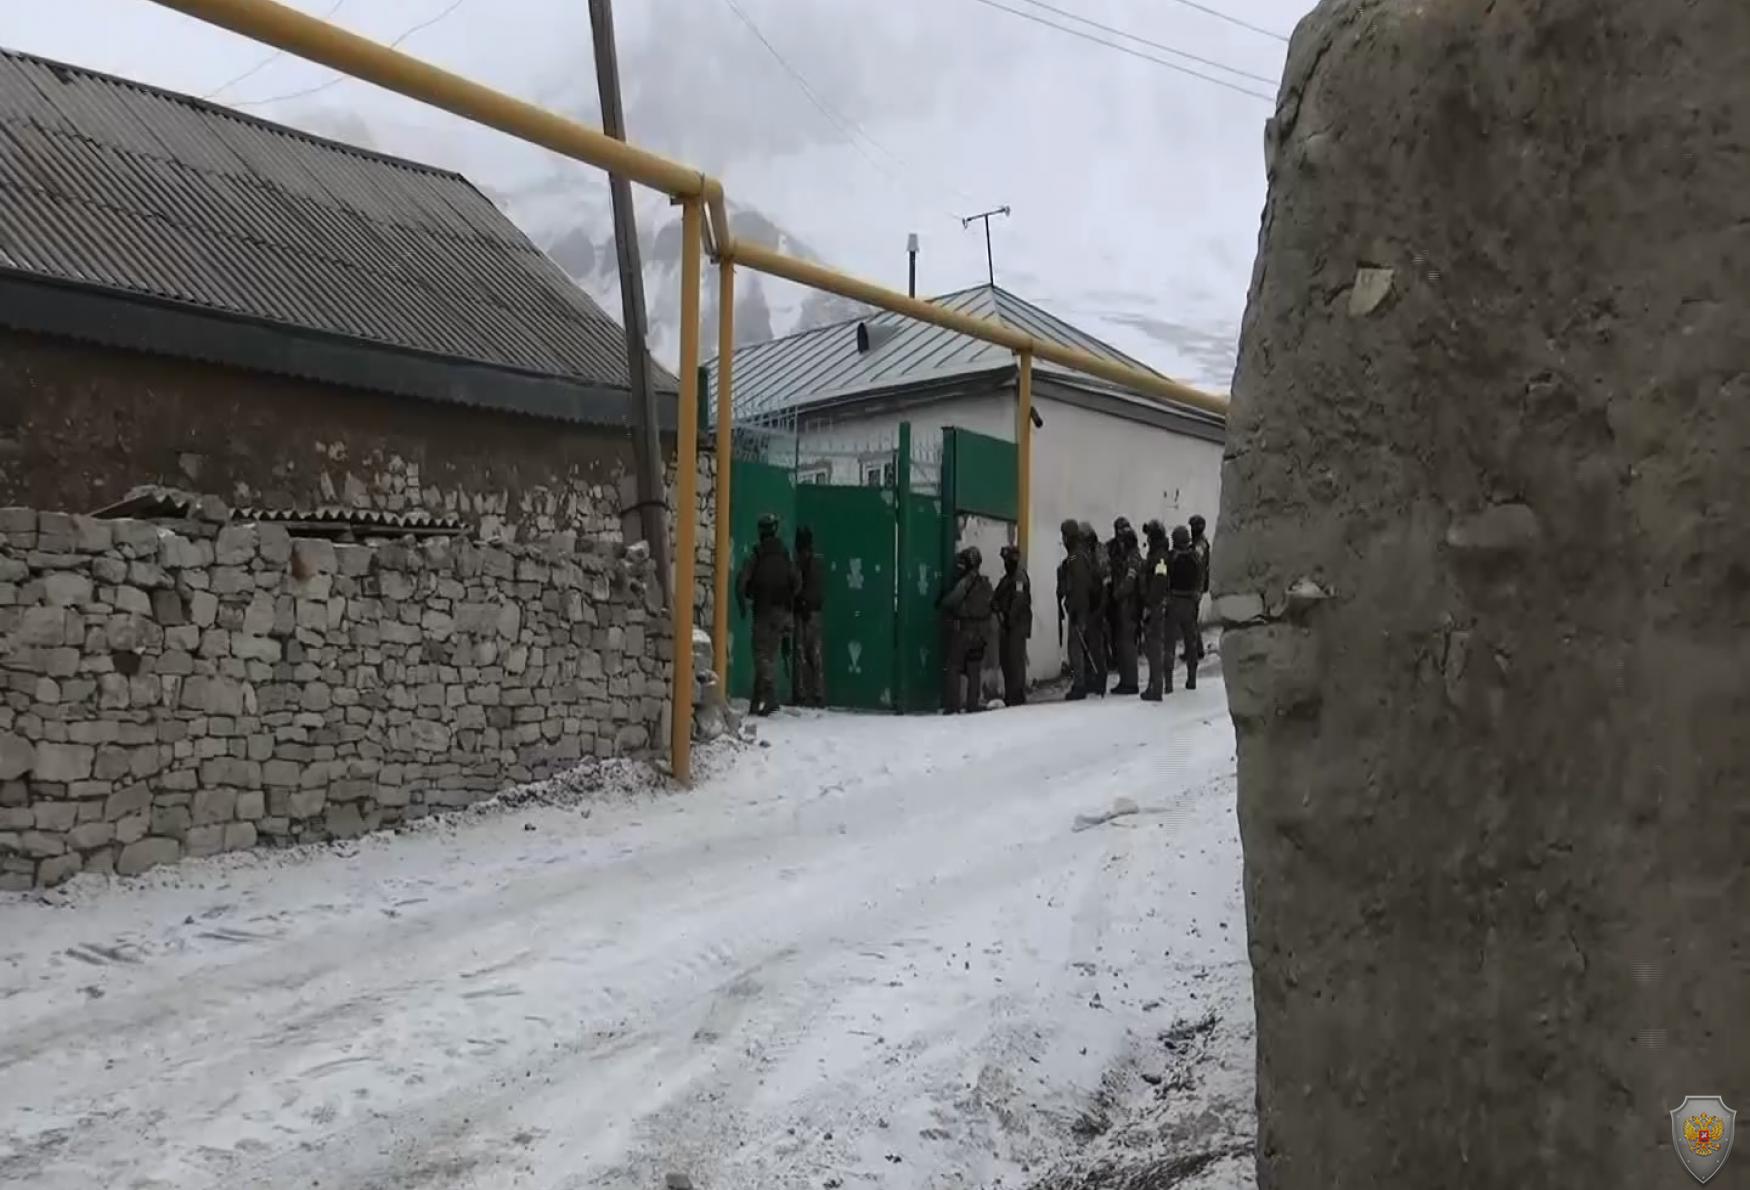 Укрывавшийся в блокированном доме бандит нейтрализован в ходе КТО в Дагестане